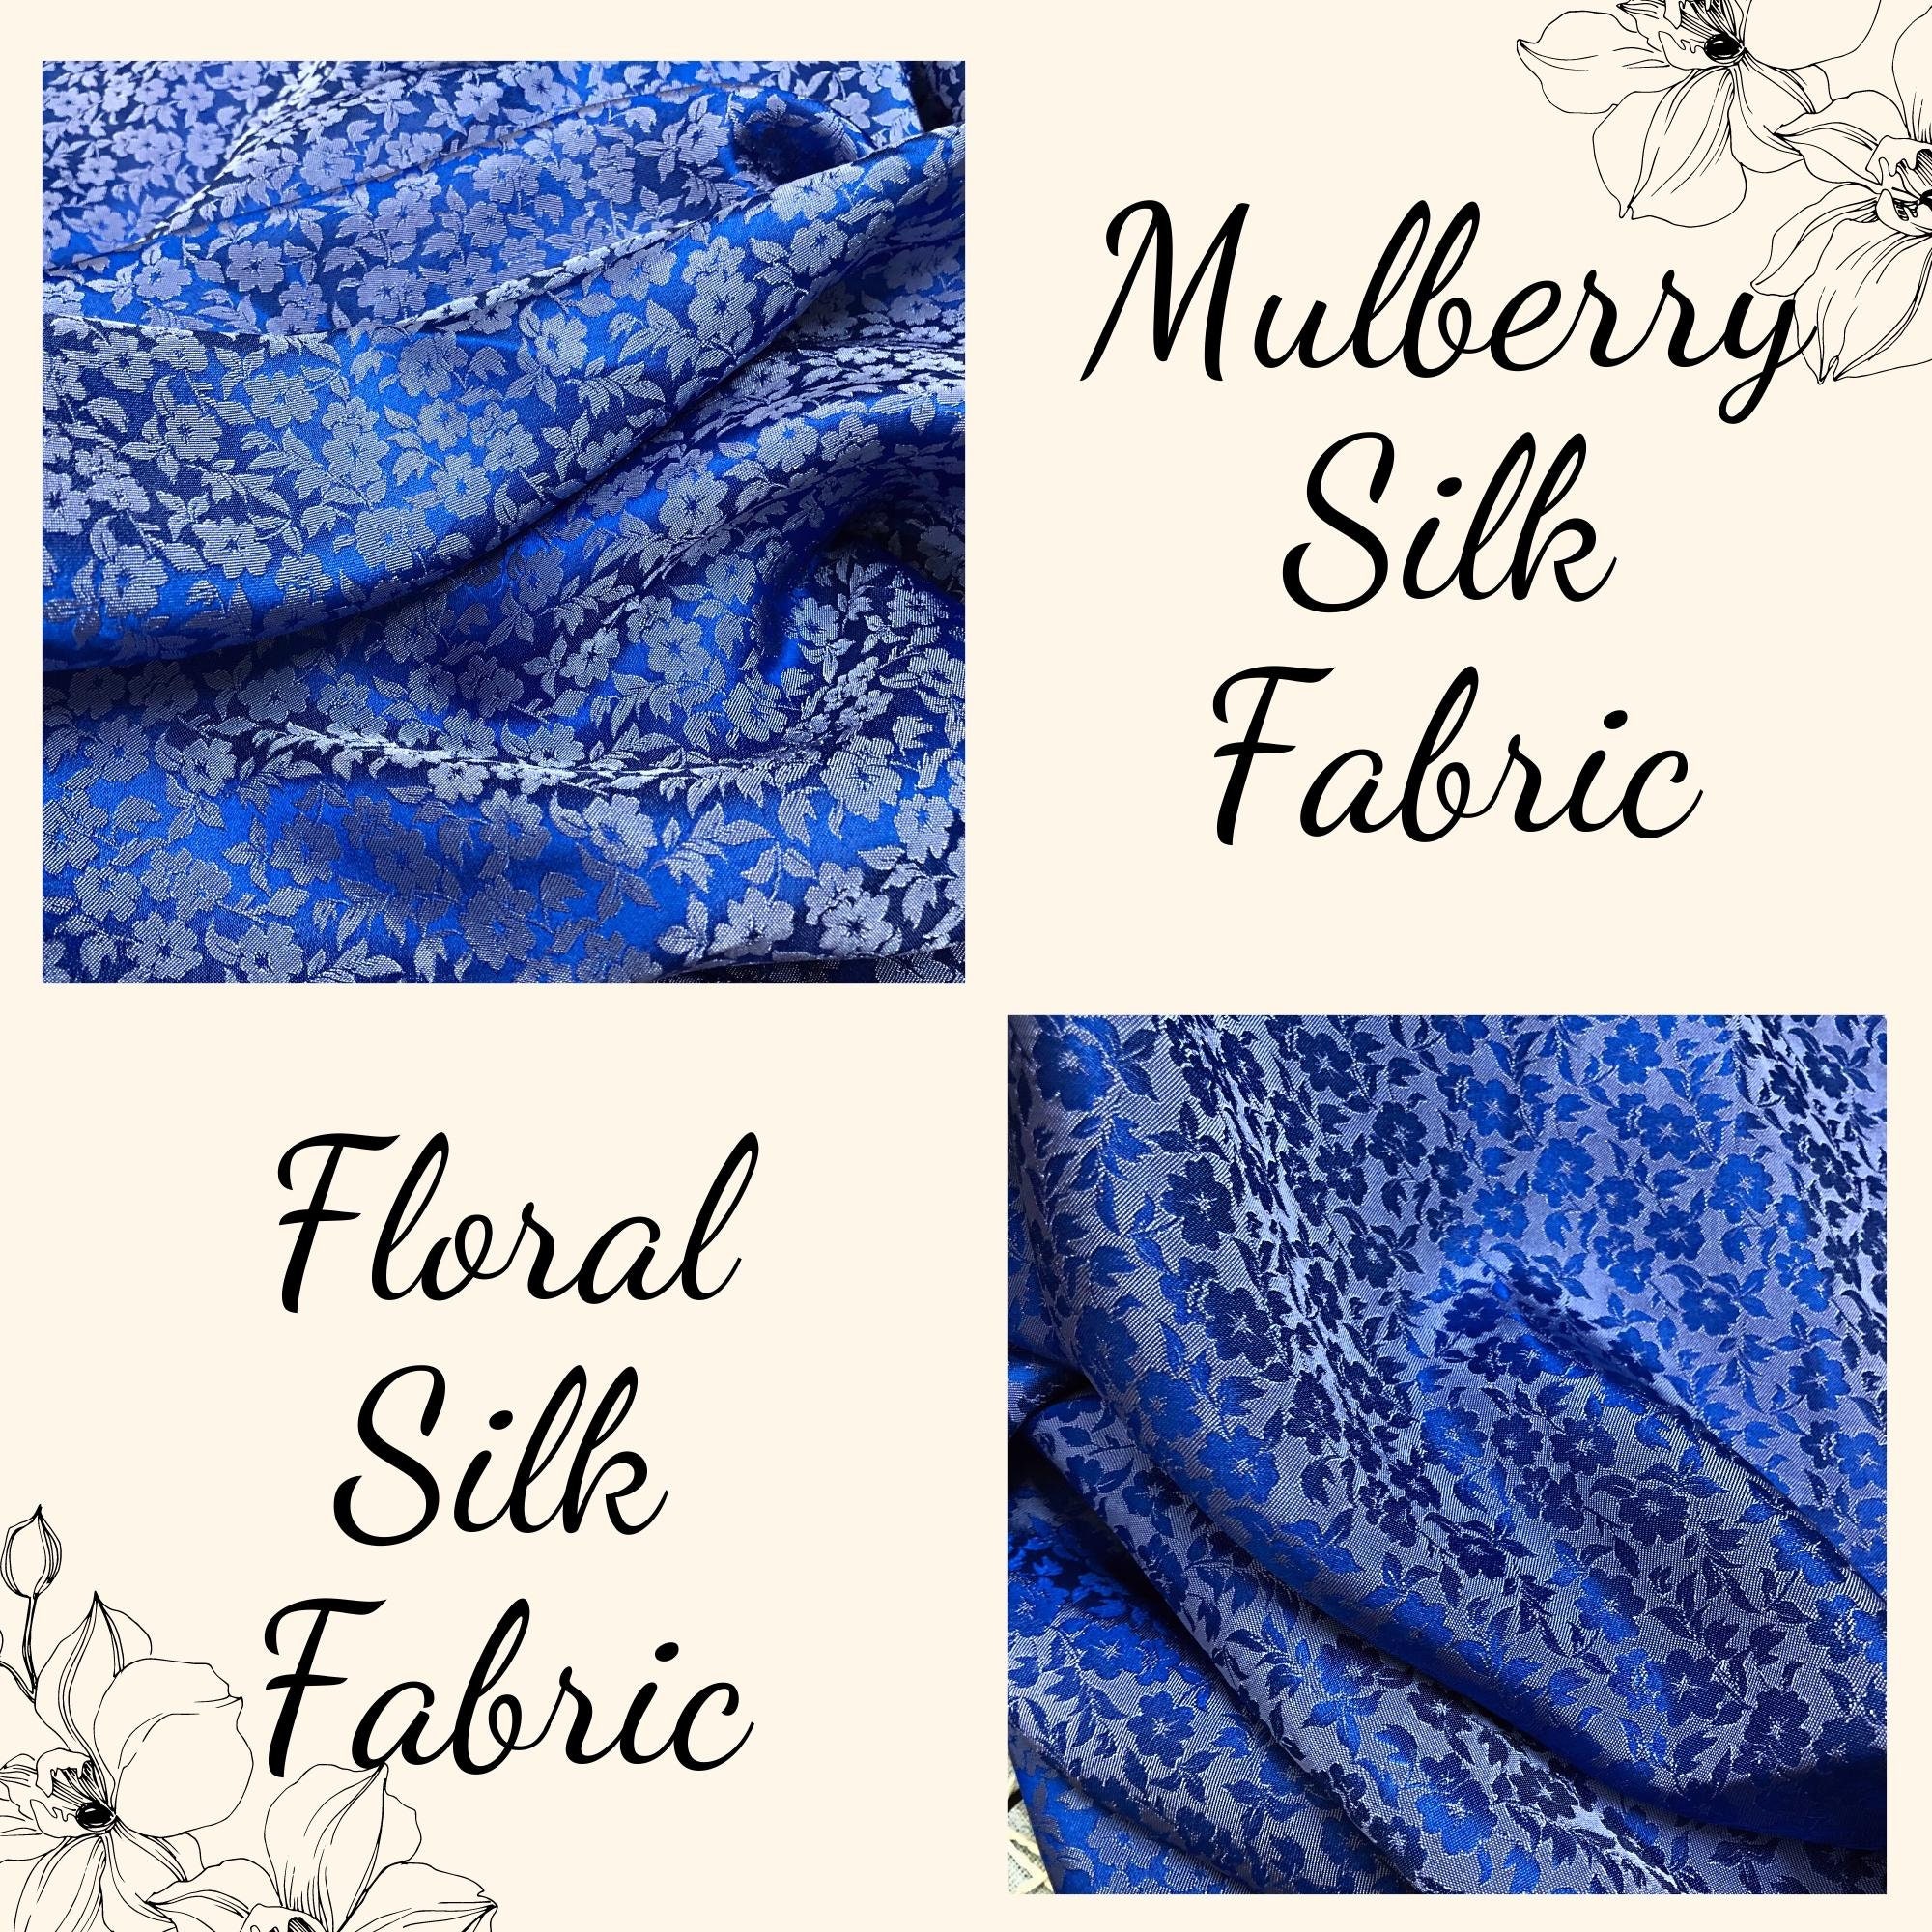 Vải Lụa Tơ Tằm hoa mai màu xanh lam, mềm#mượt#mịn, dệt thủ công, khổ vải 90cm